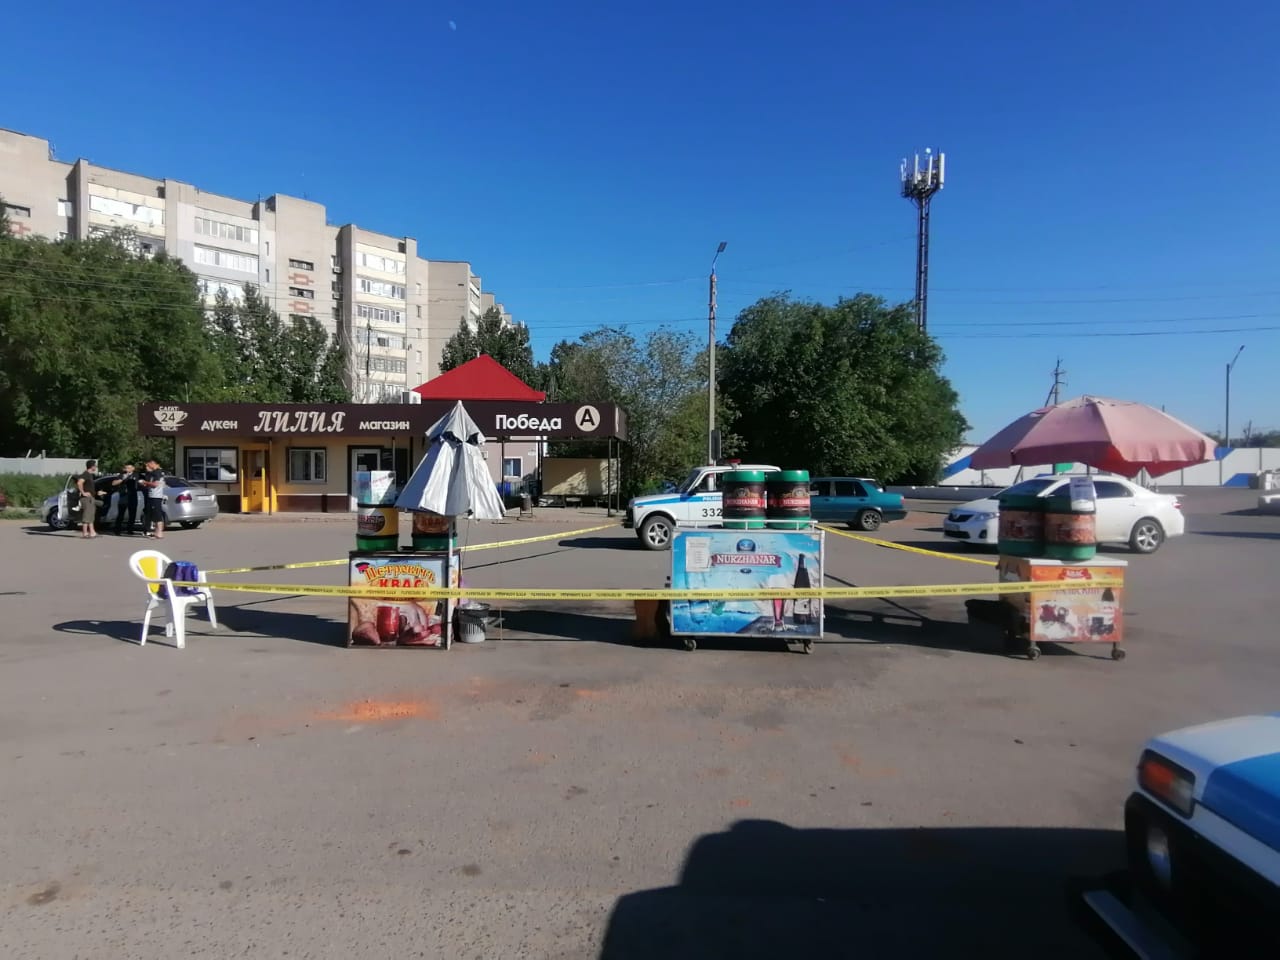 Словесная ссора на улице в Уральске закончилась летальным исходом